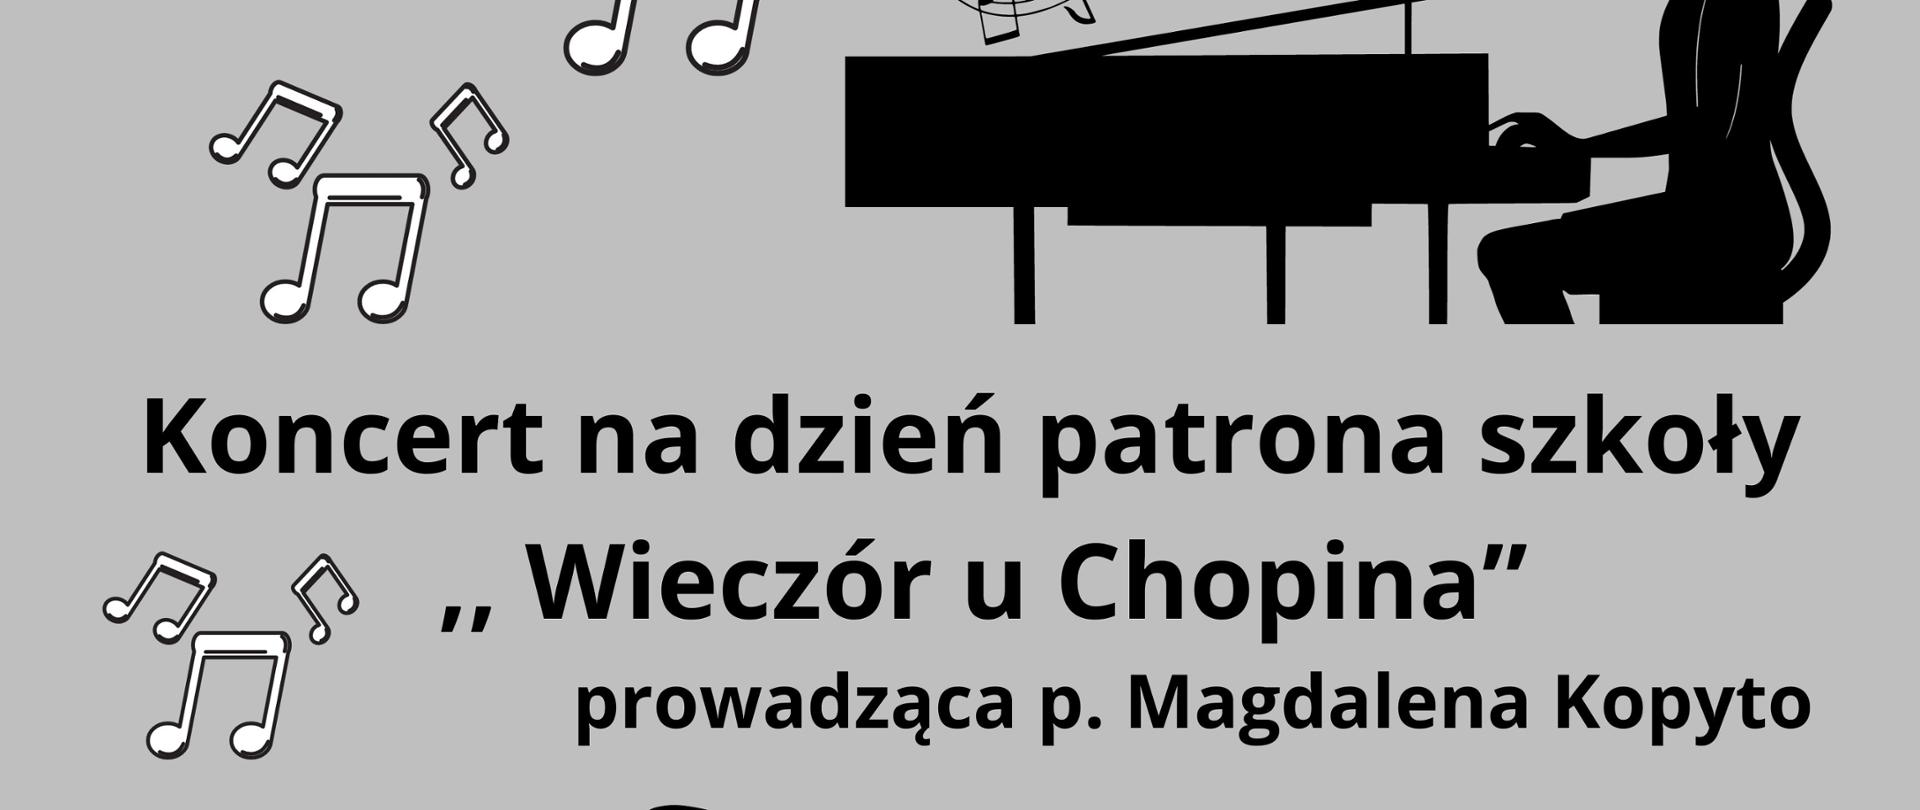 plakat w kolorach szarości, bieli i czerni, w górnej części białe nuty w czarnej otoczce i czarna pięciolinia obok czarny obrazek dziewczyna grająca na fortepianie poniżej napis Koncert na dzień patrona szkoły ,, Wieczór u Chopina" prowadząca koncert Pani Magdalena Kopyto 10 X 2023 godz. 16:00 sala kameralna na dole plakatu obrazek Chopina czarny